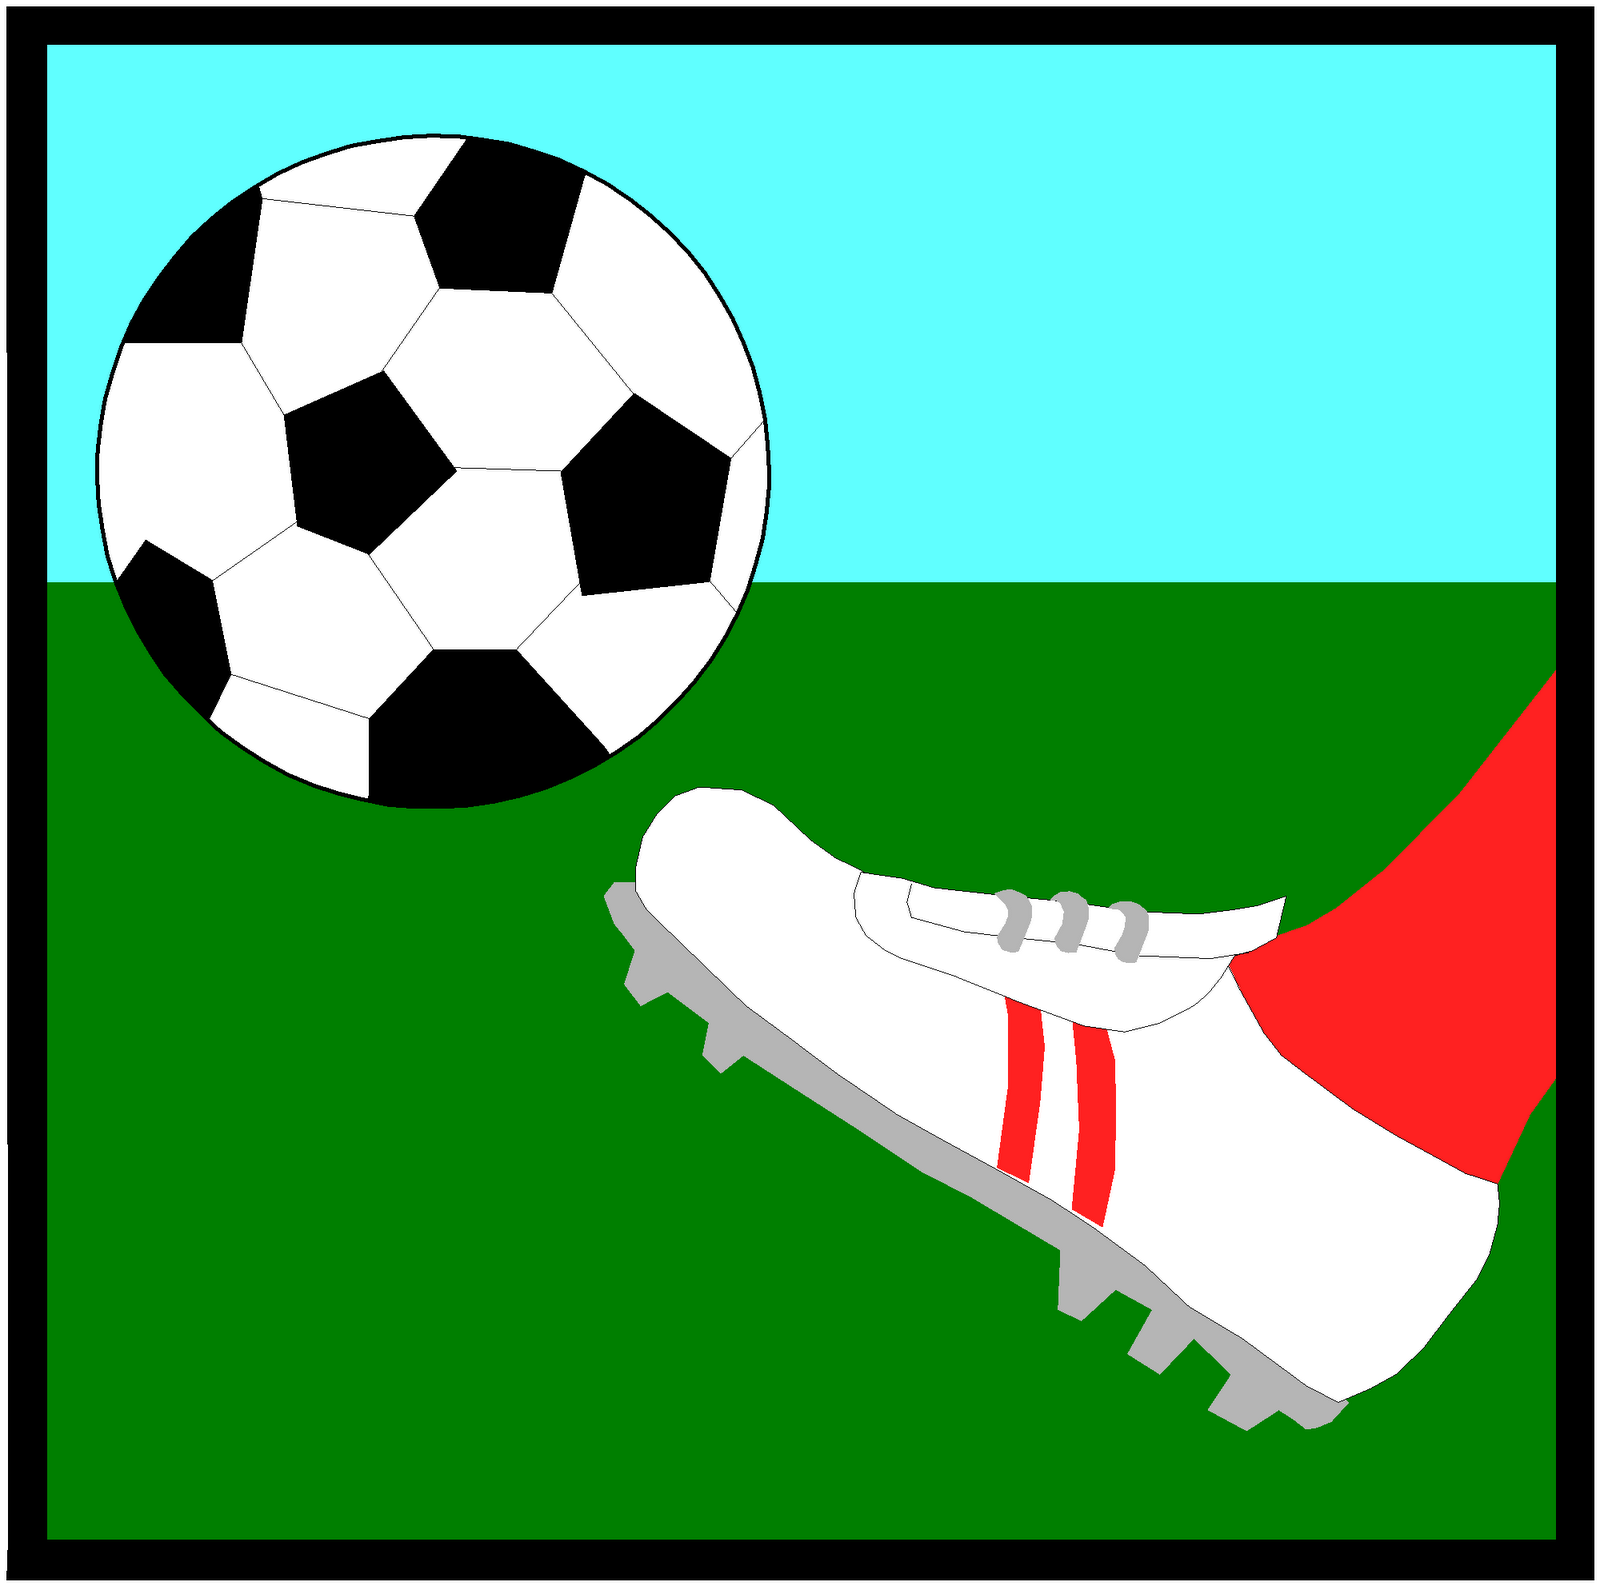 Foot sport. Футбольный мяч и нога. Нога пинает мяч. Нарисовать ногу с мячом. Футбол иллюстрация.